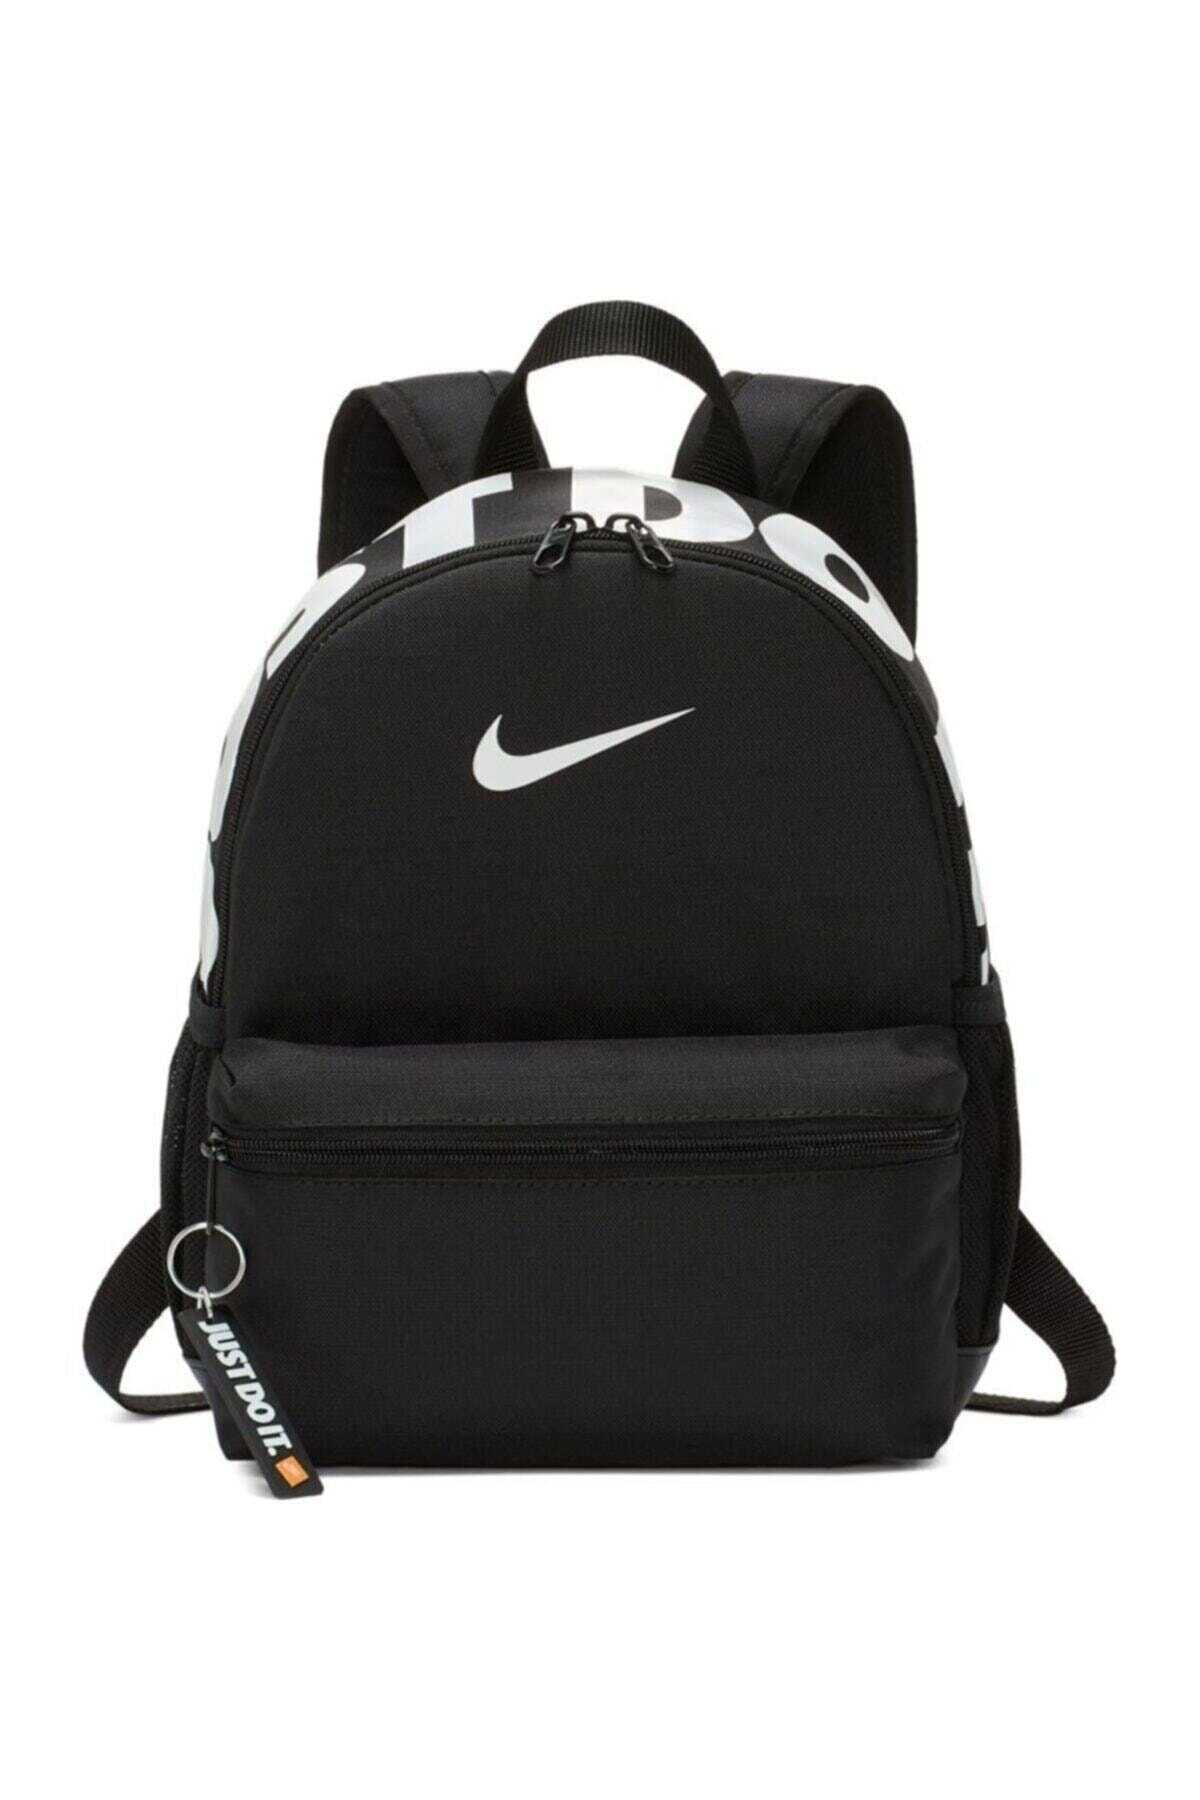 کوله پشتی مینی چاپ دار یوینسکس مشکی برند Nike 